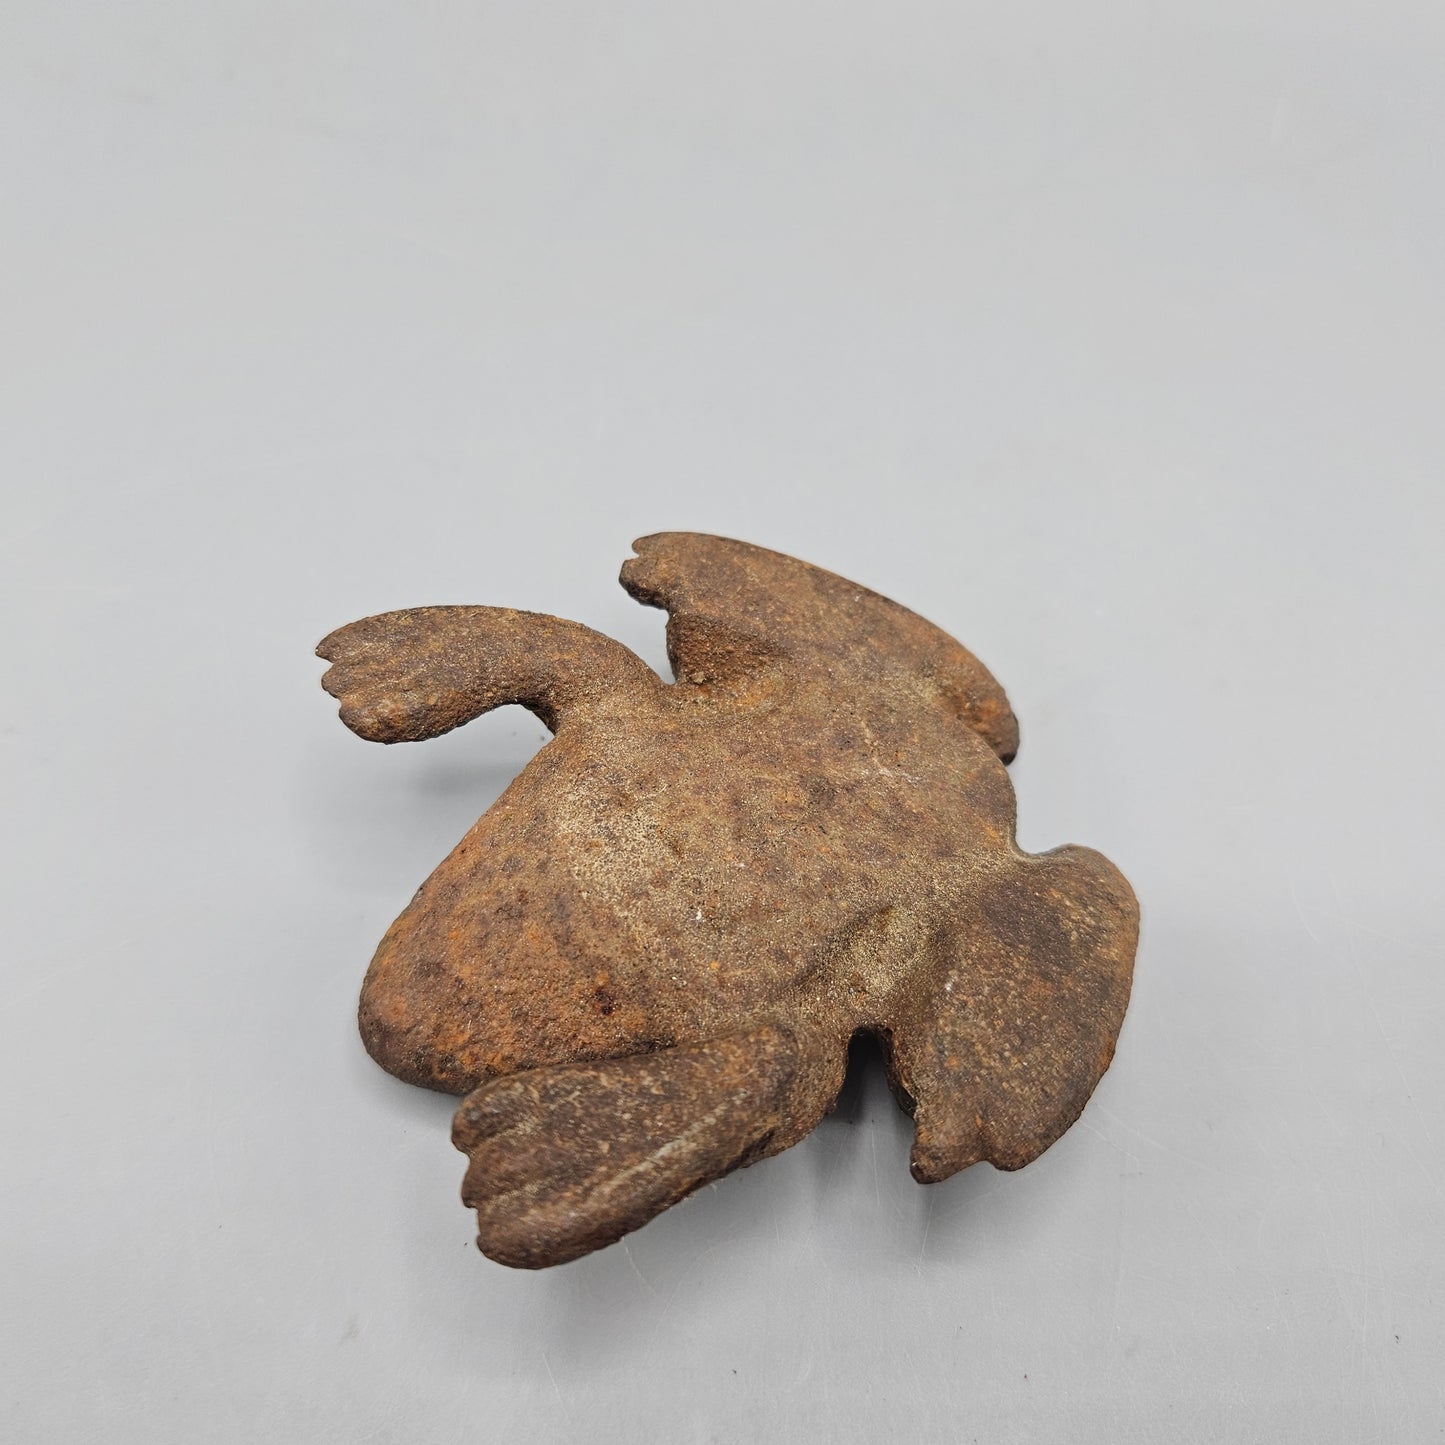 Cast Iron Frog Figure Paperweight/Flower Pot Ornament